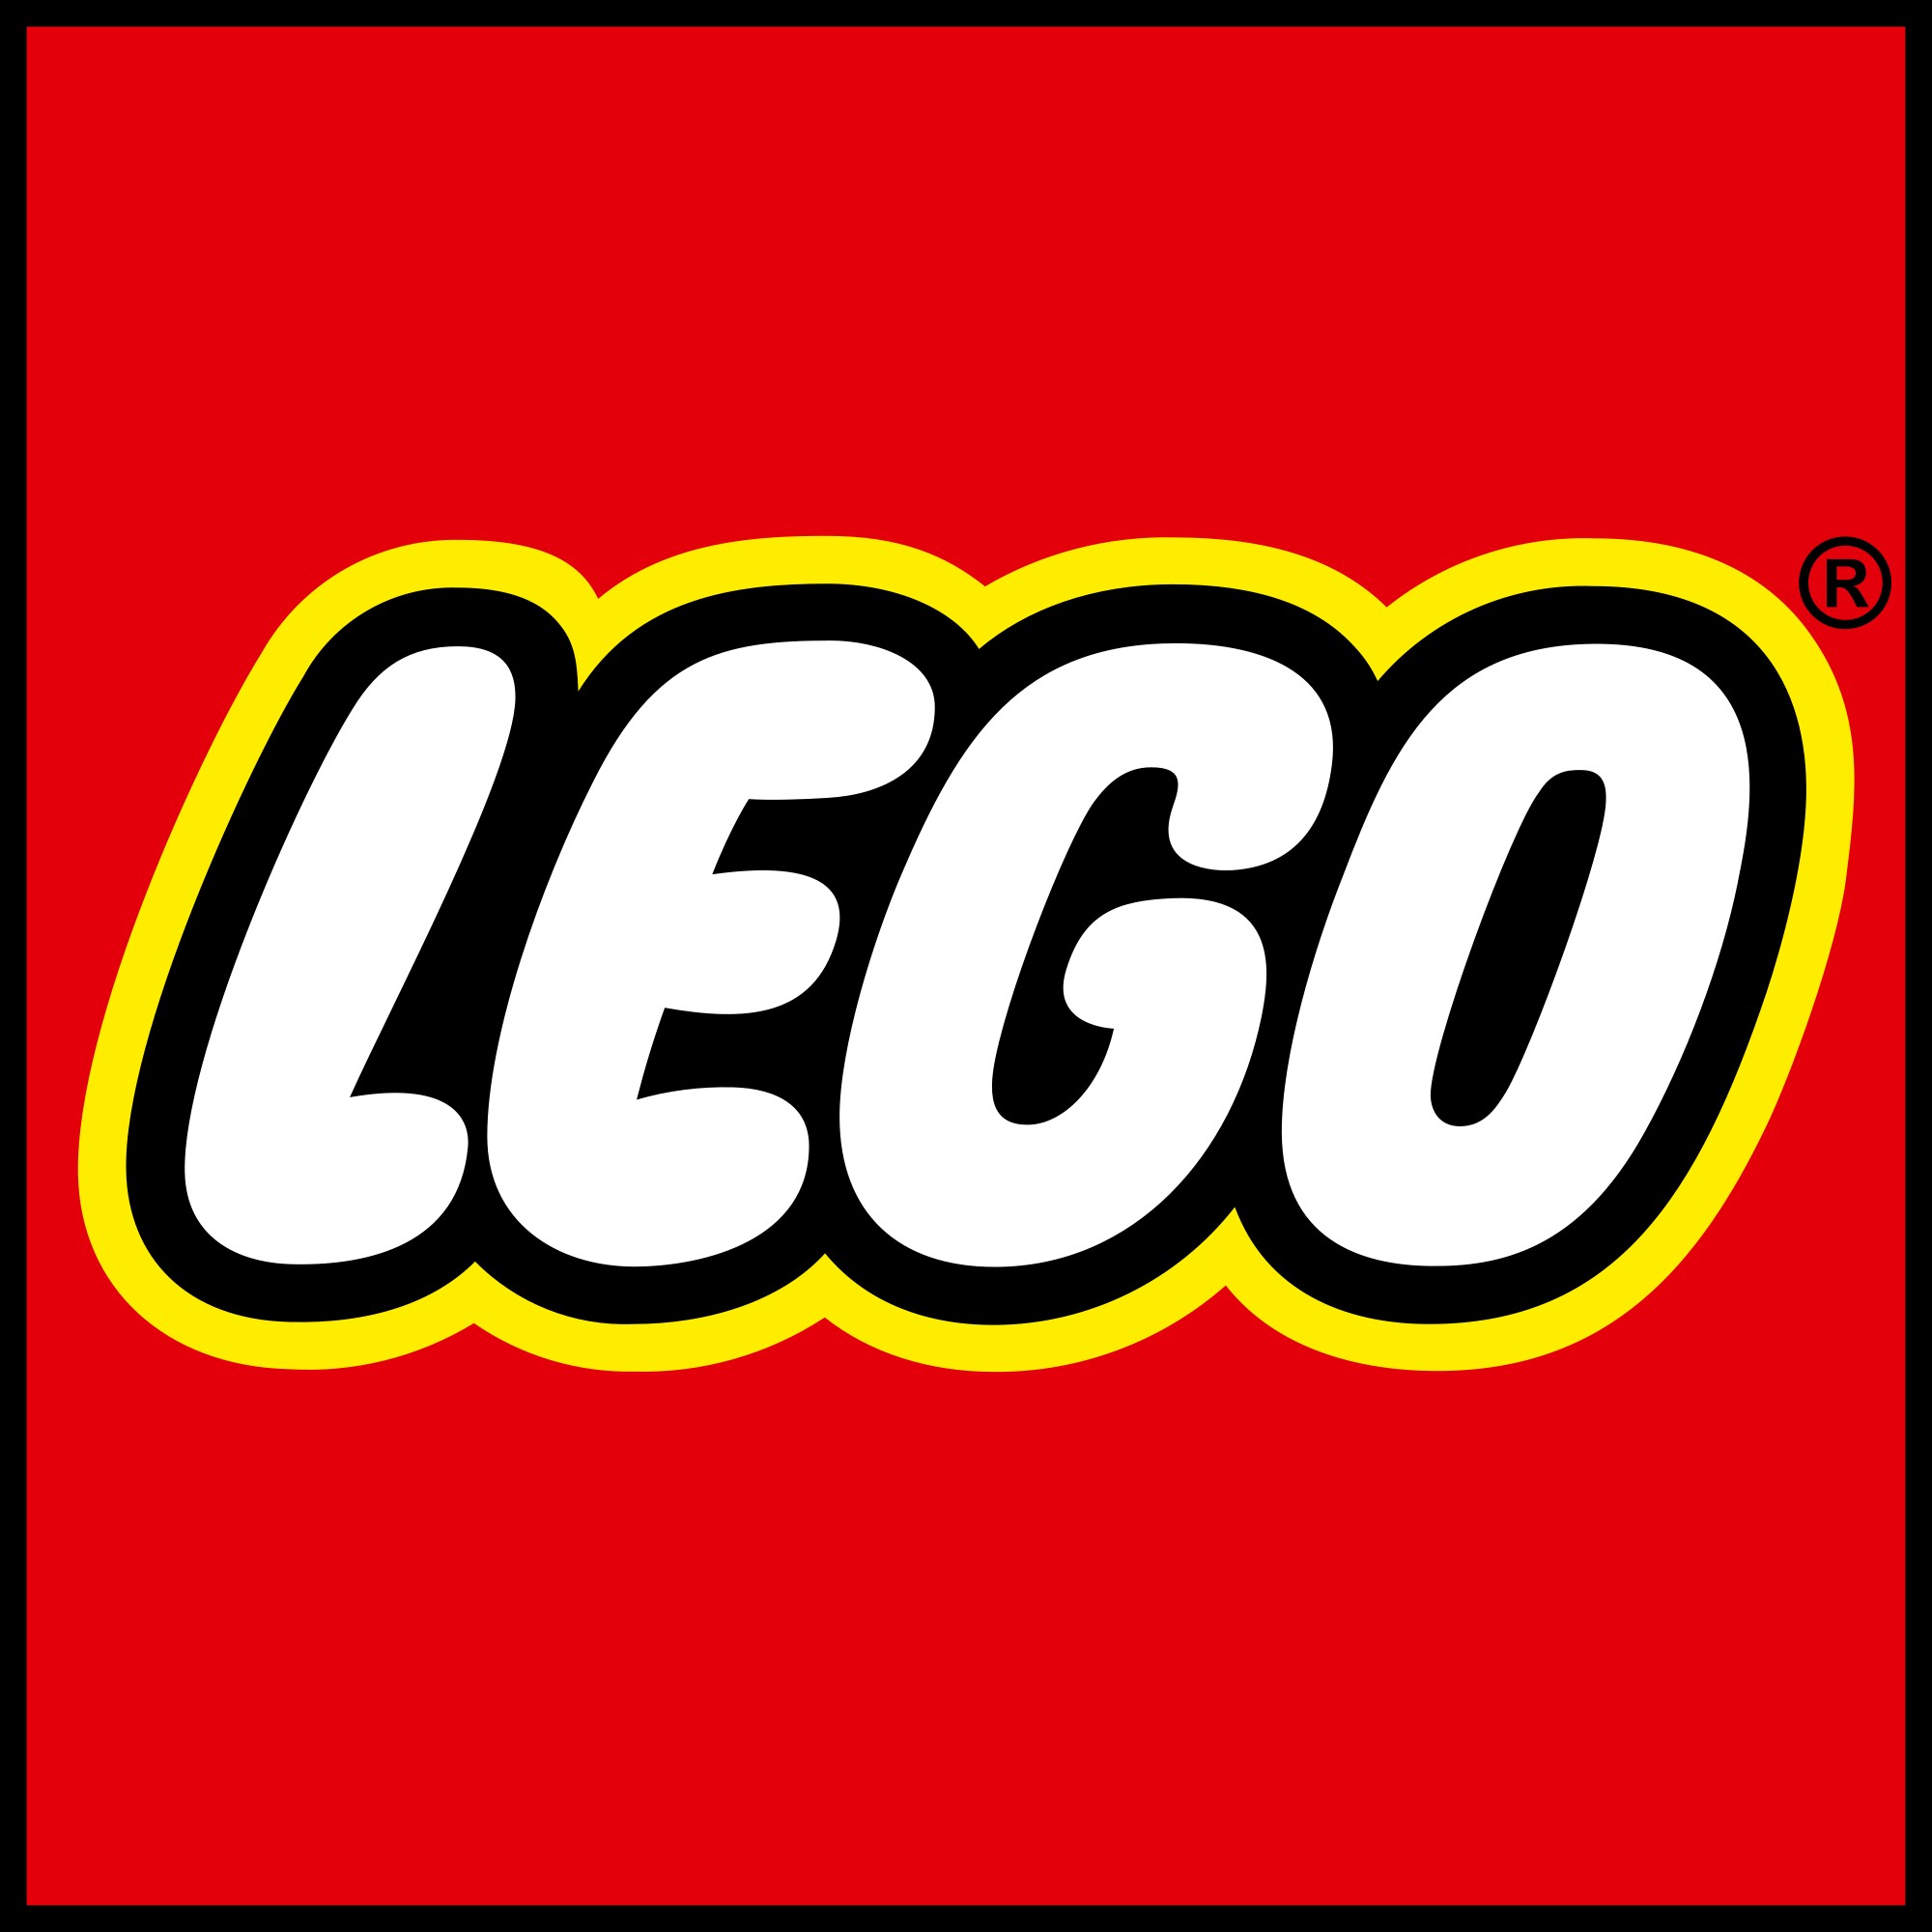 LEGO SPA